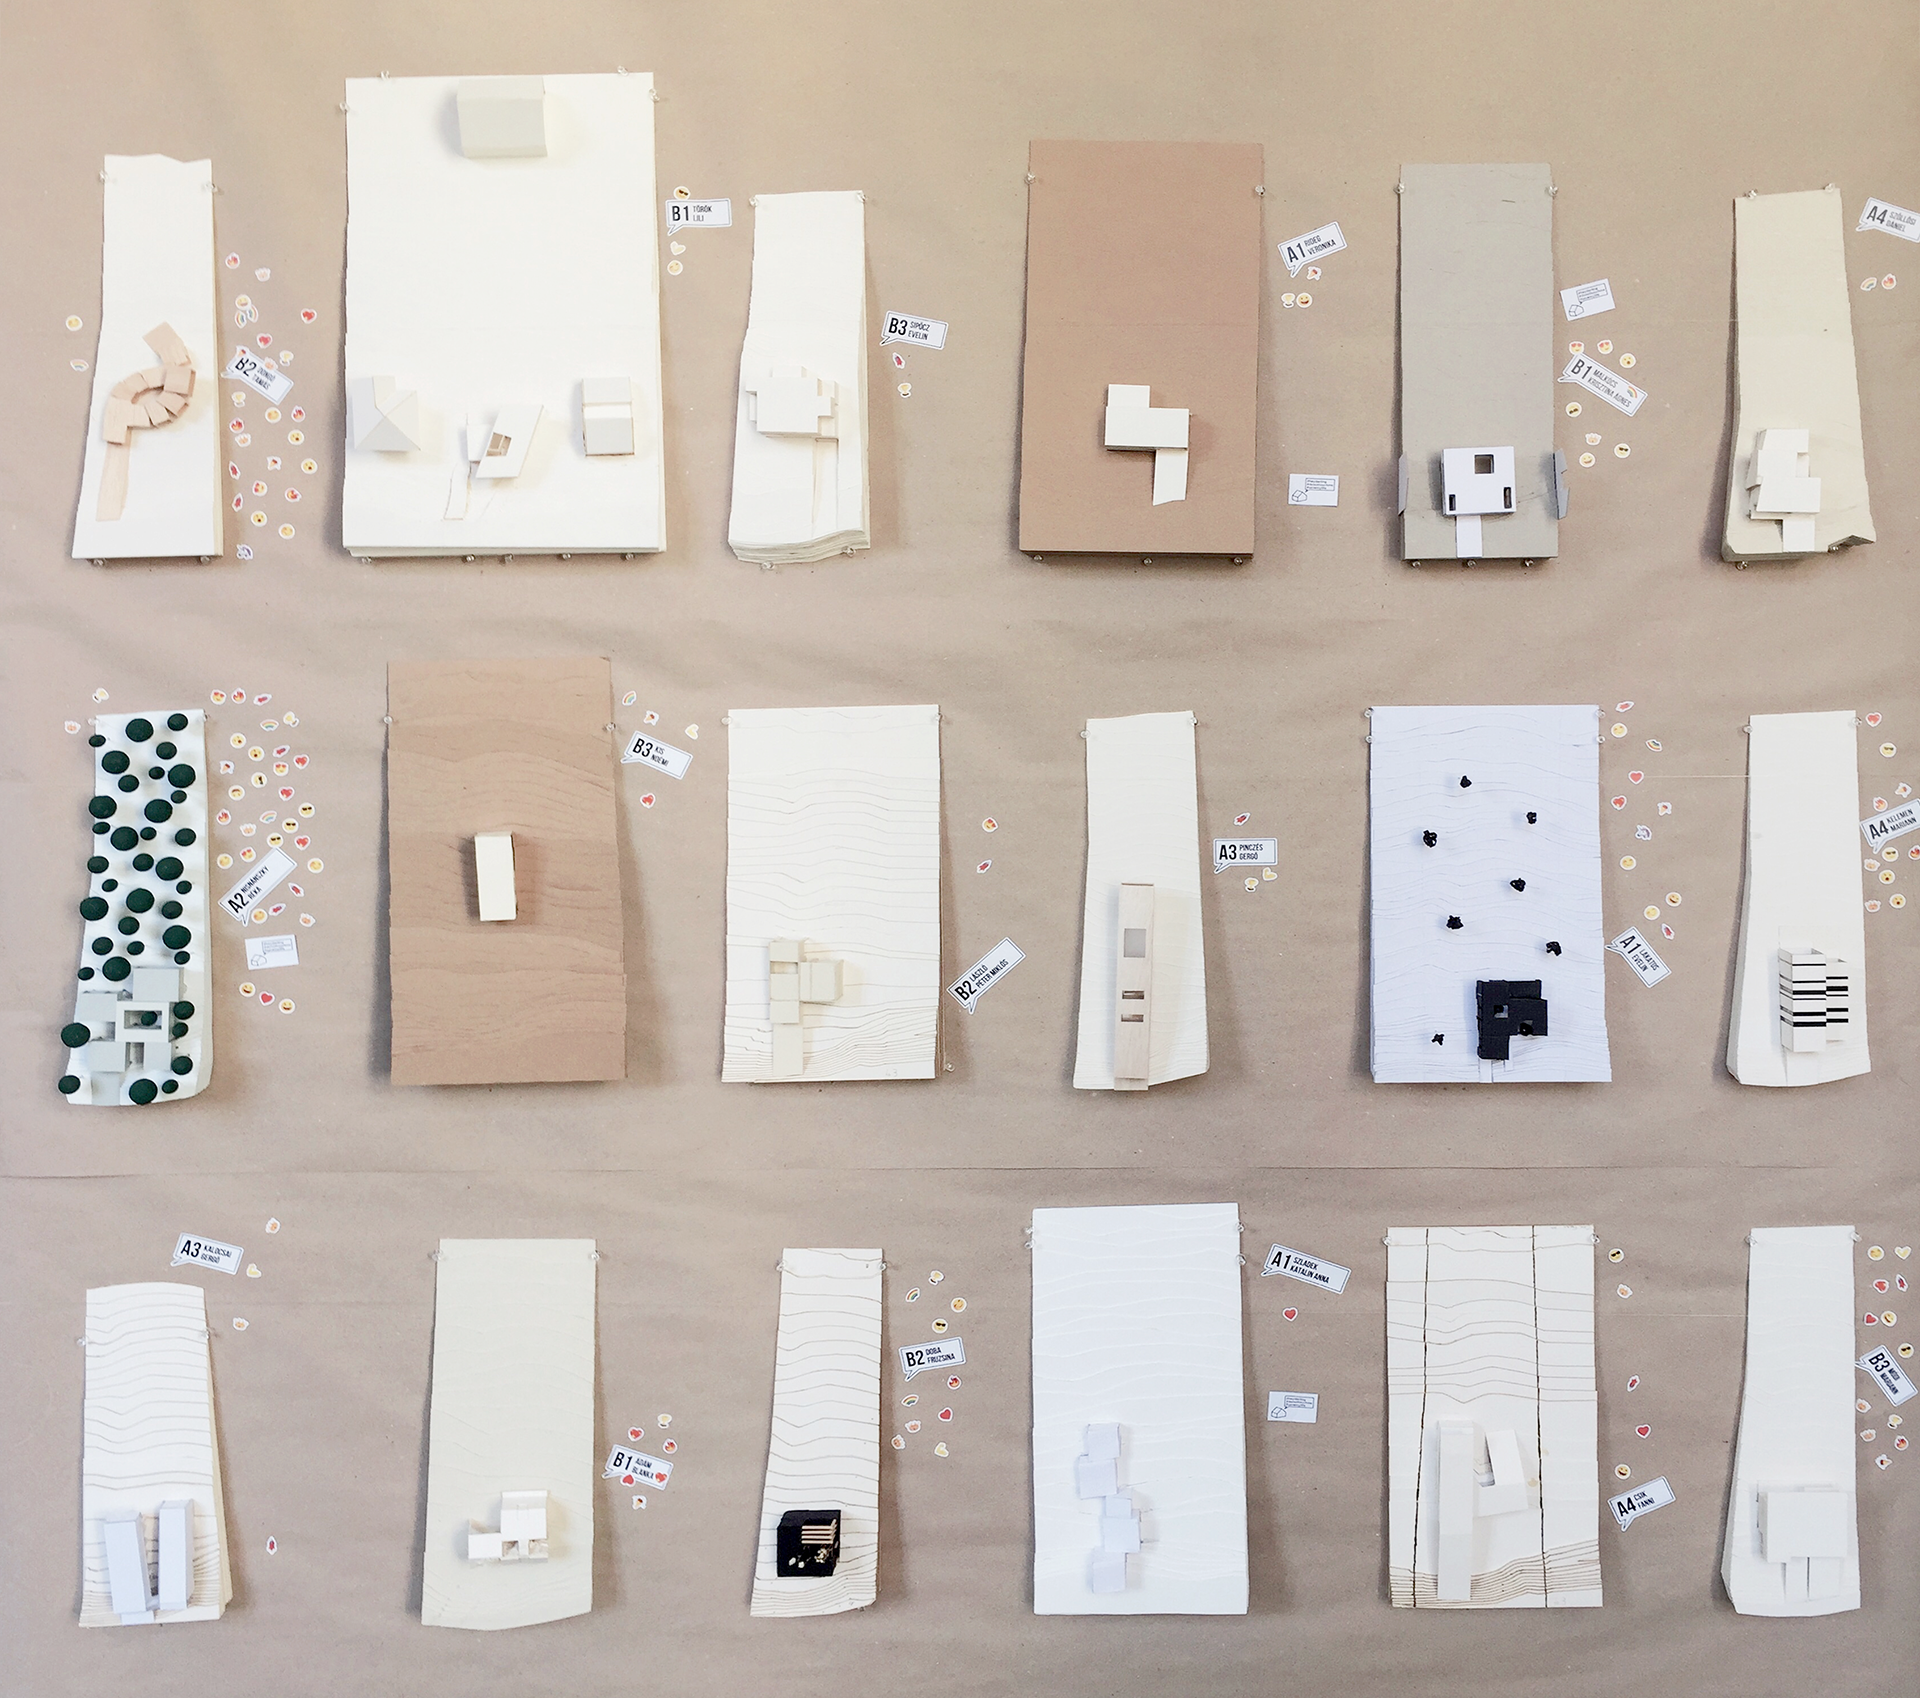 Makettfal – A lakóépülettervezési tanszék makettkiállítása